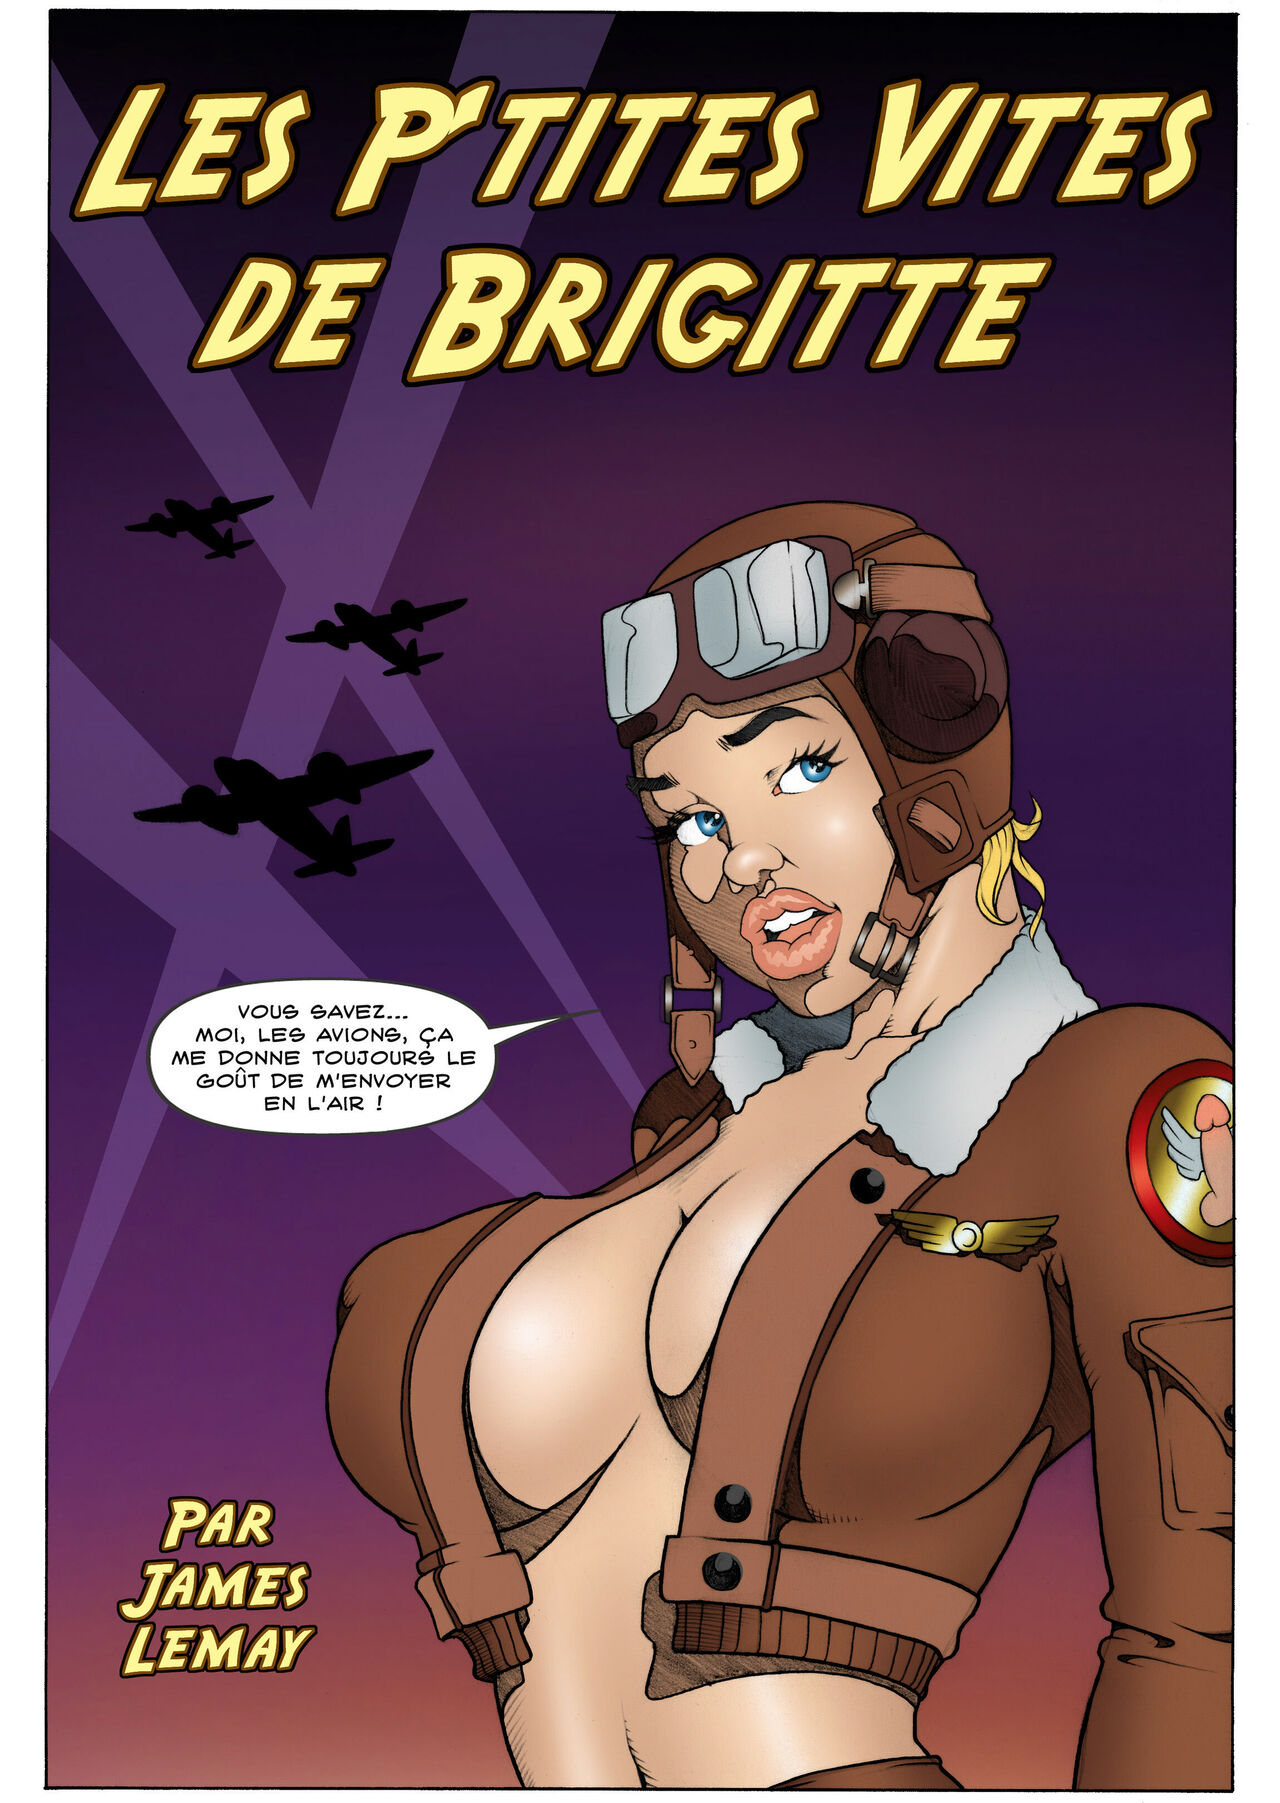 Les p‘tites vites de Brigitte - Vol. 4 numero d'image 100